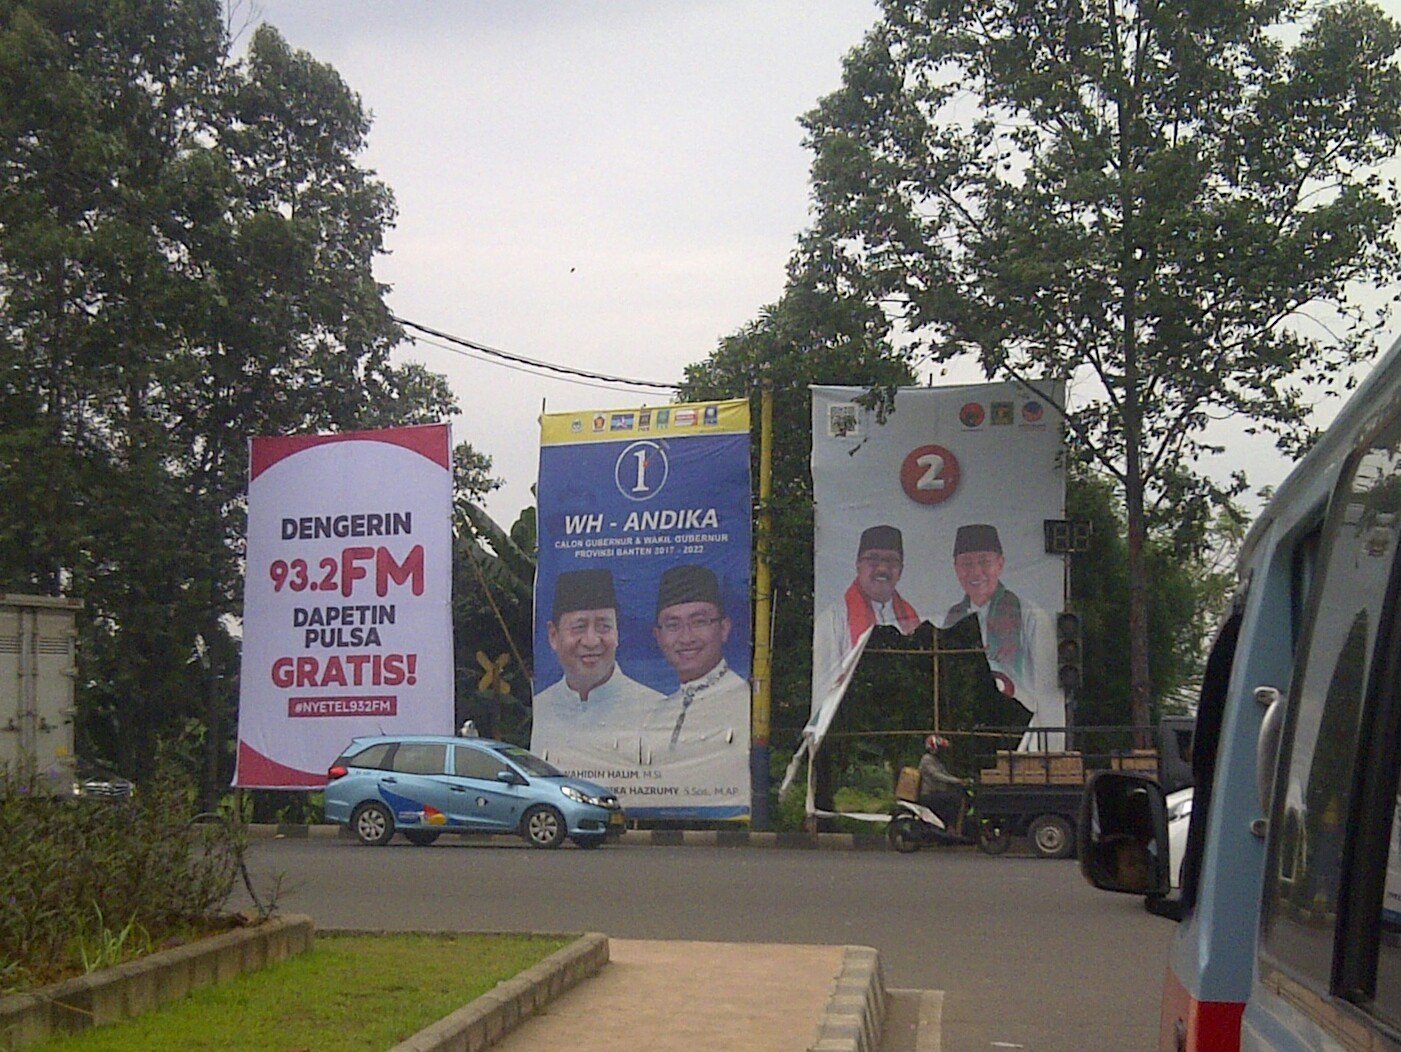 Mau Pasang Reklame di Tangerang? Begini Cara Urusnya Lewat Online